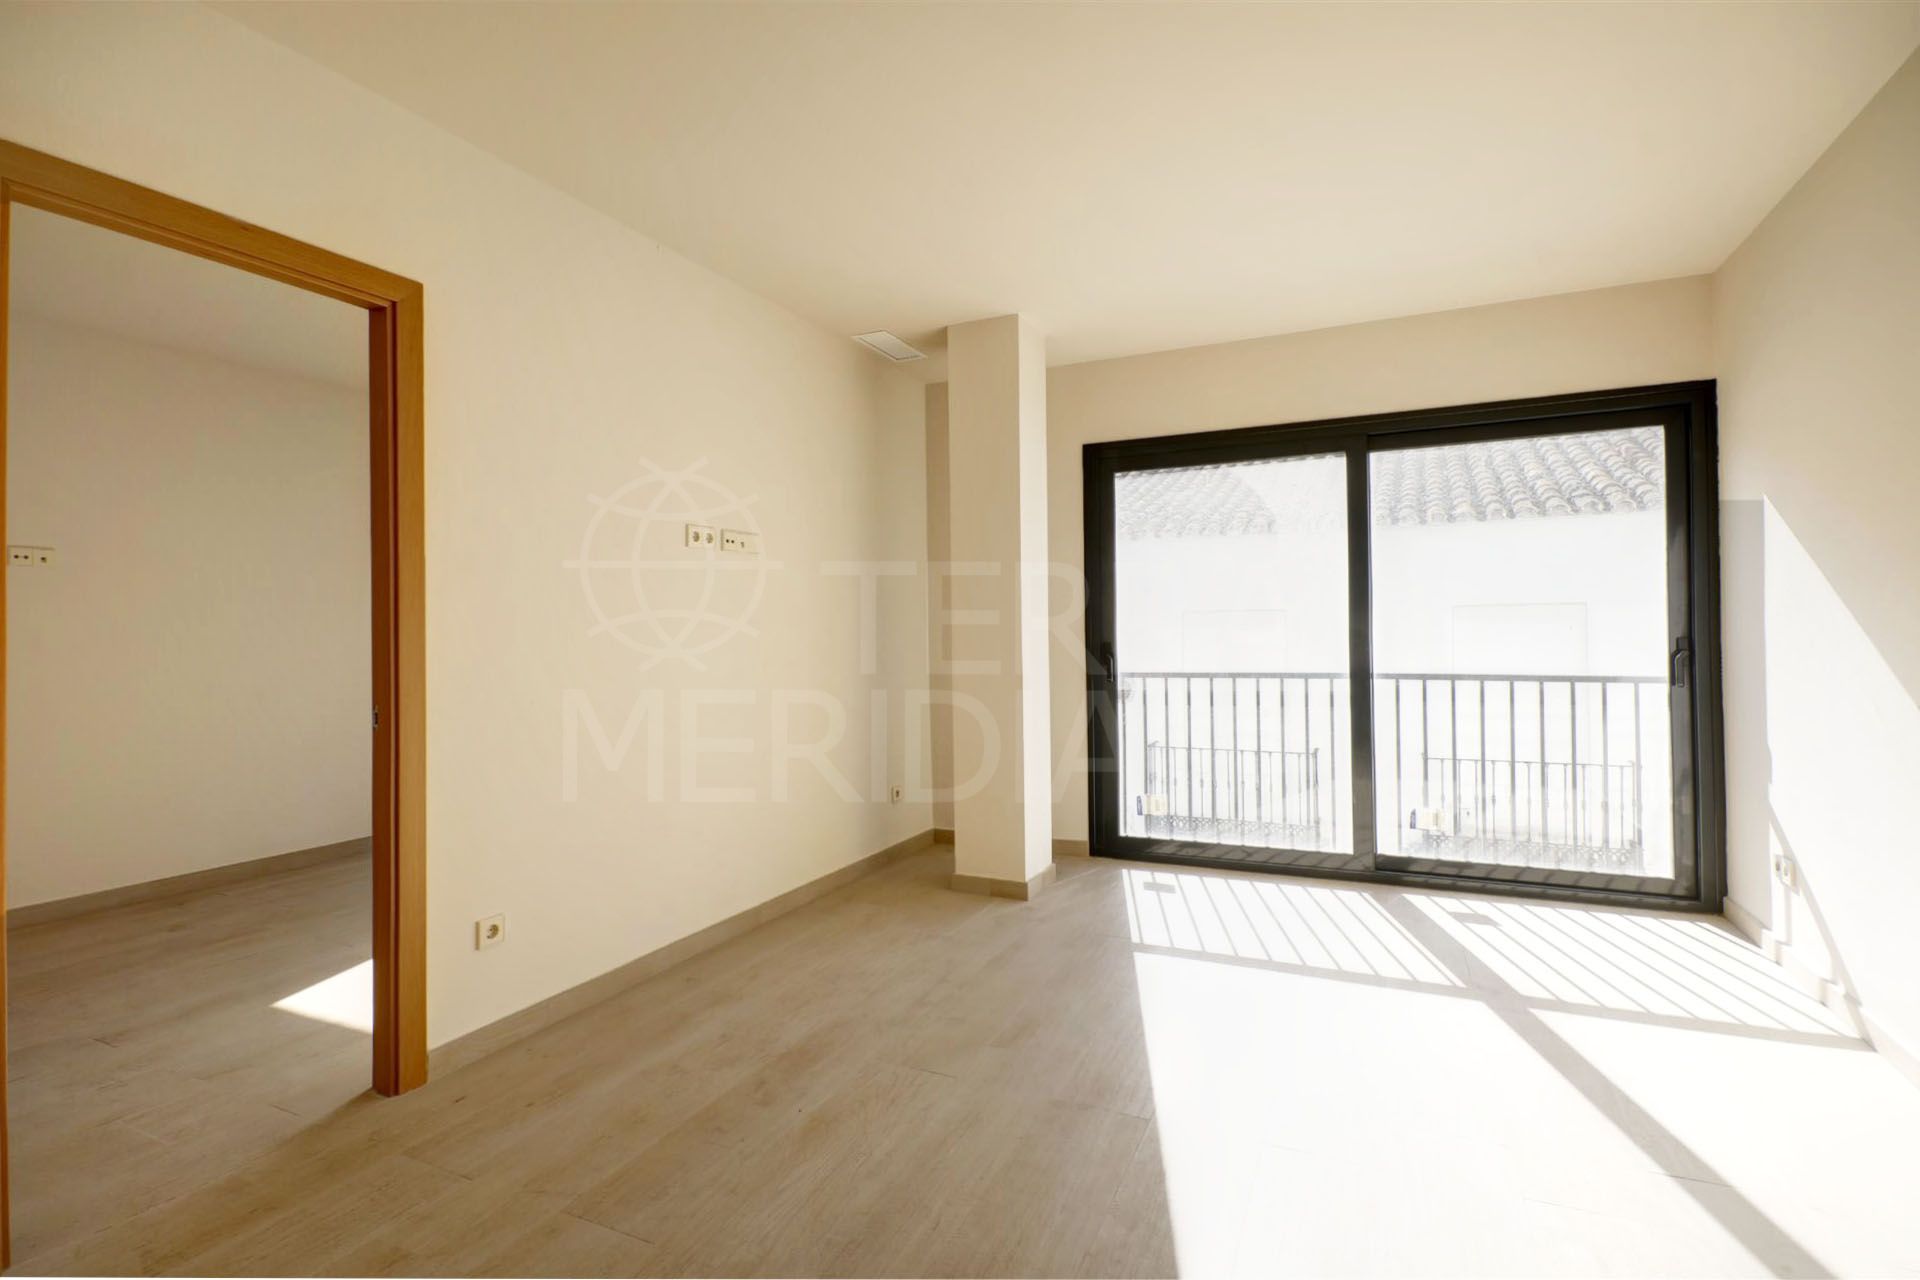 Fantastico apartamento en venta situado en el centro de Estepona, a menos de 100 metros de la playa